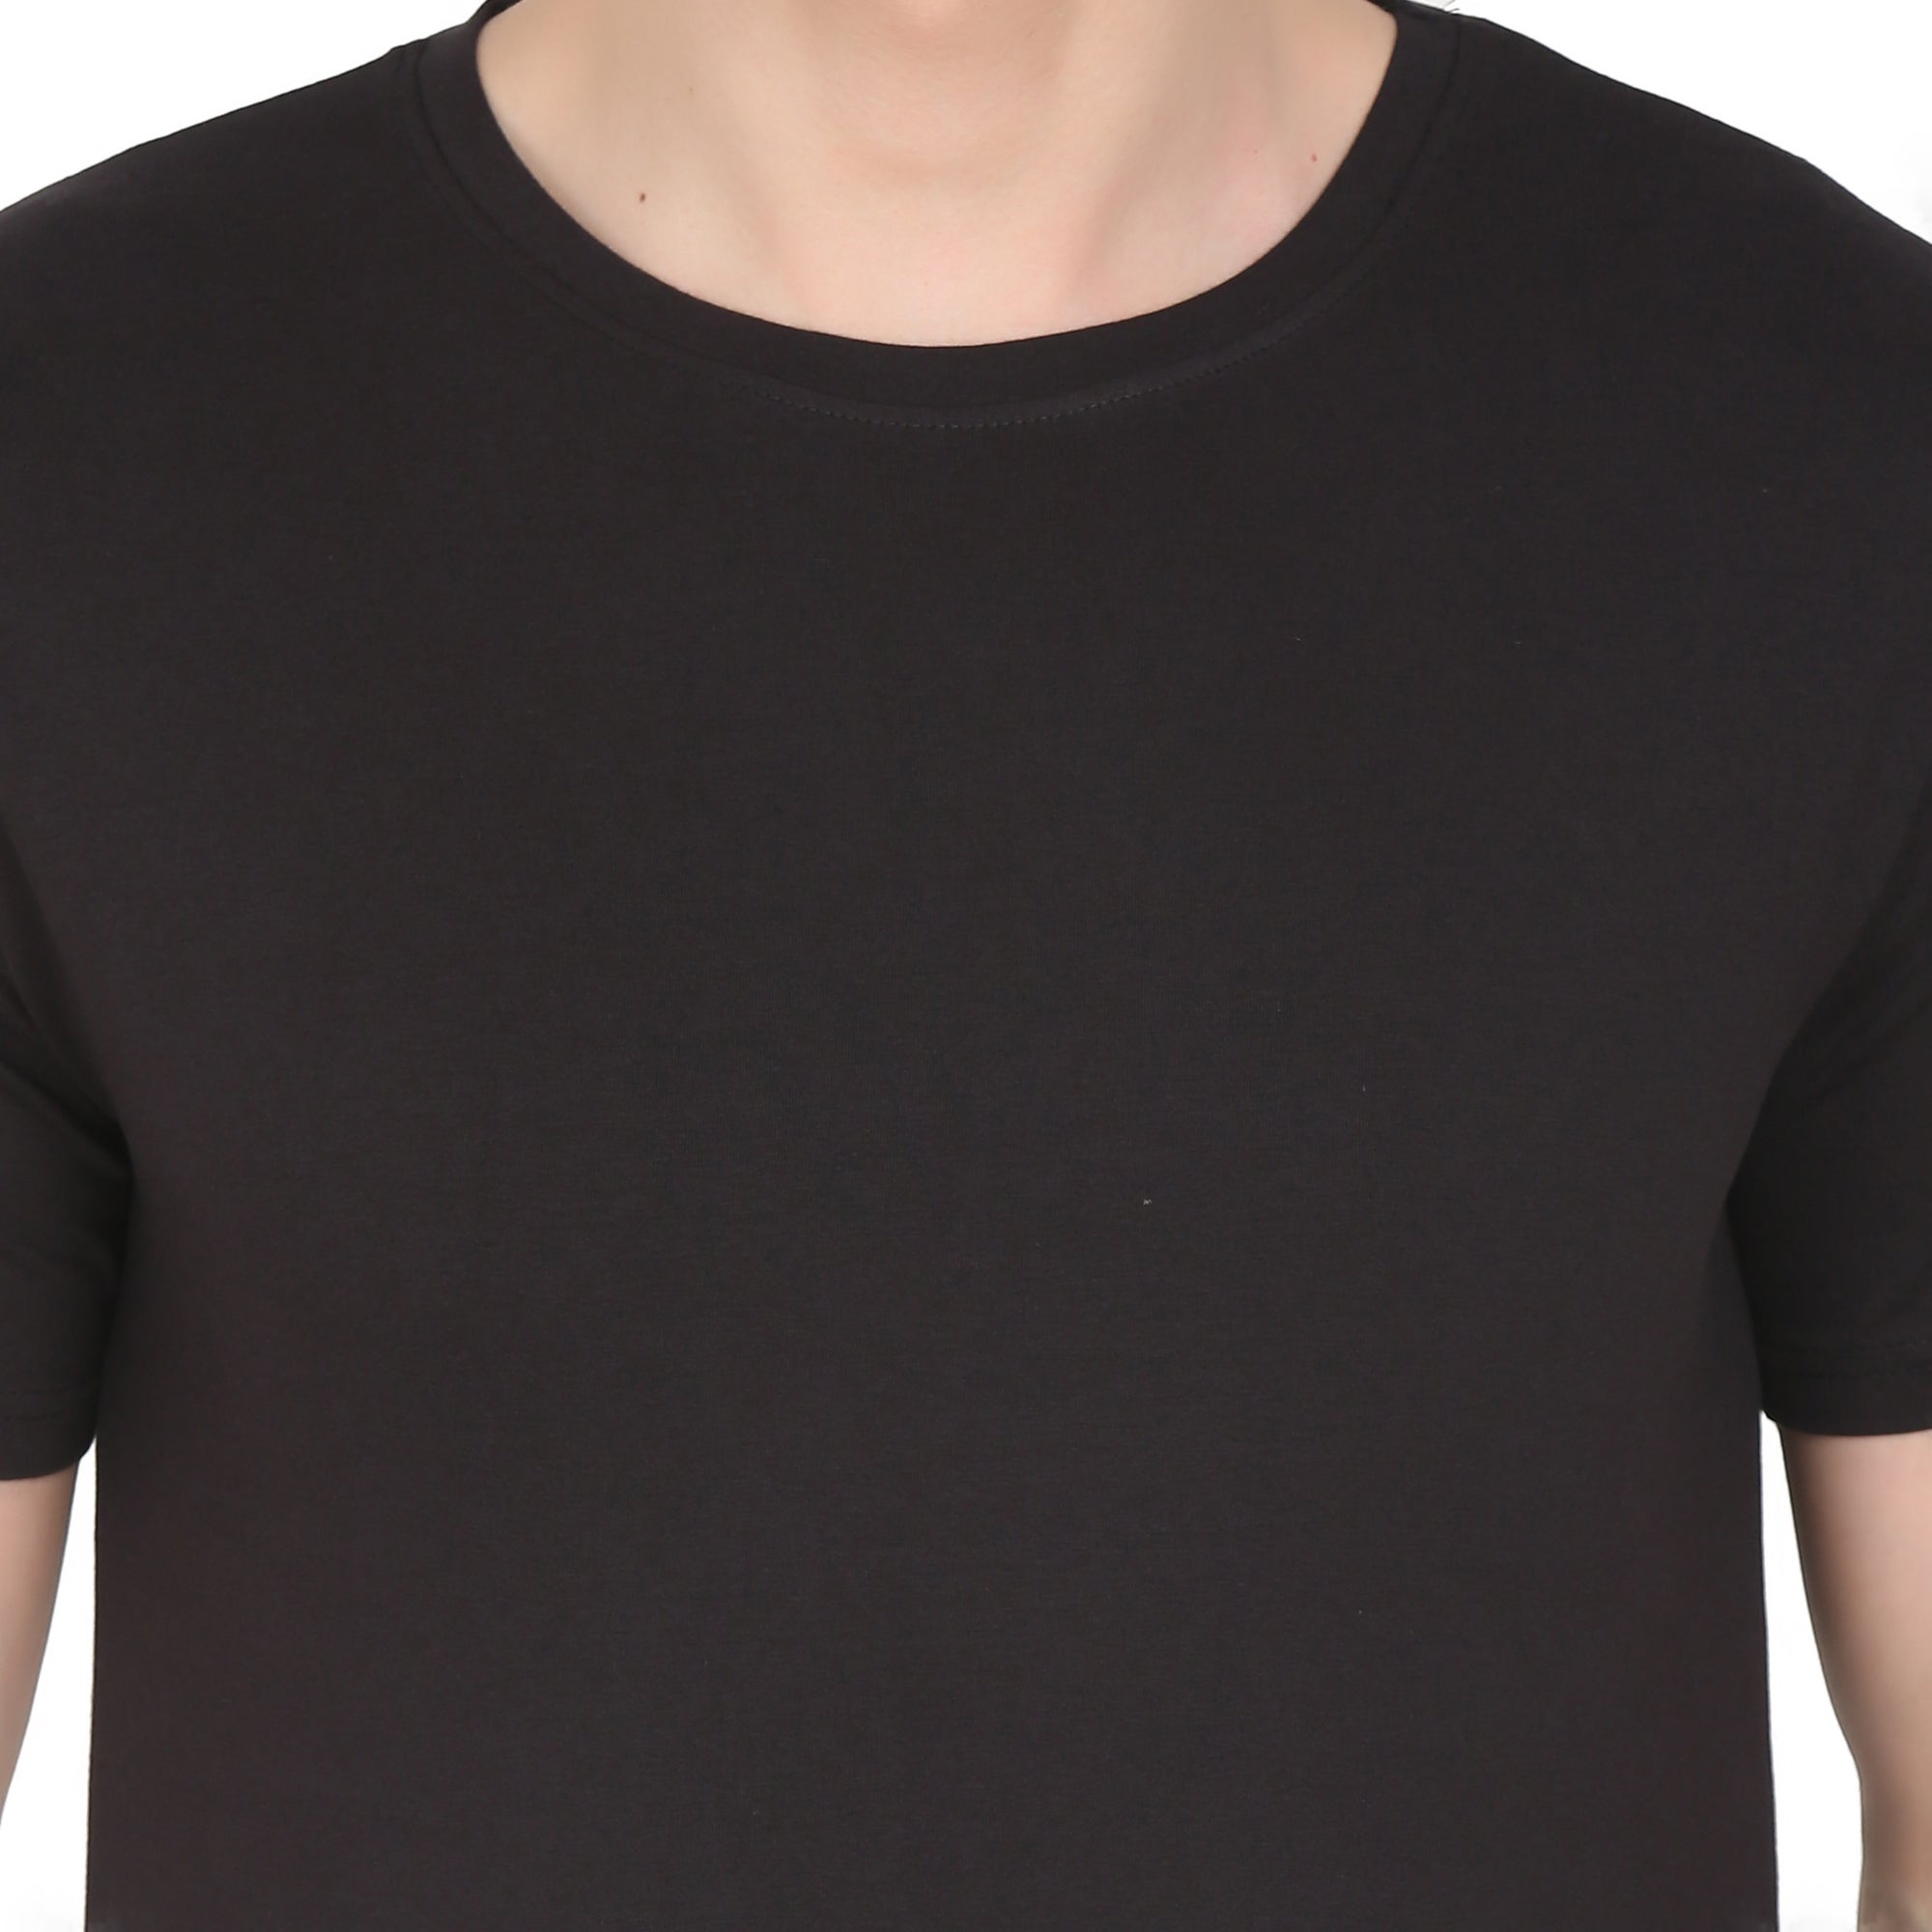 Men Four Way Stretch Cotton Plain T-shirt - Black Colour